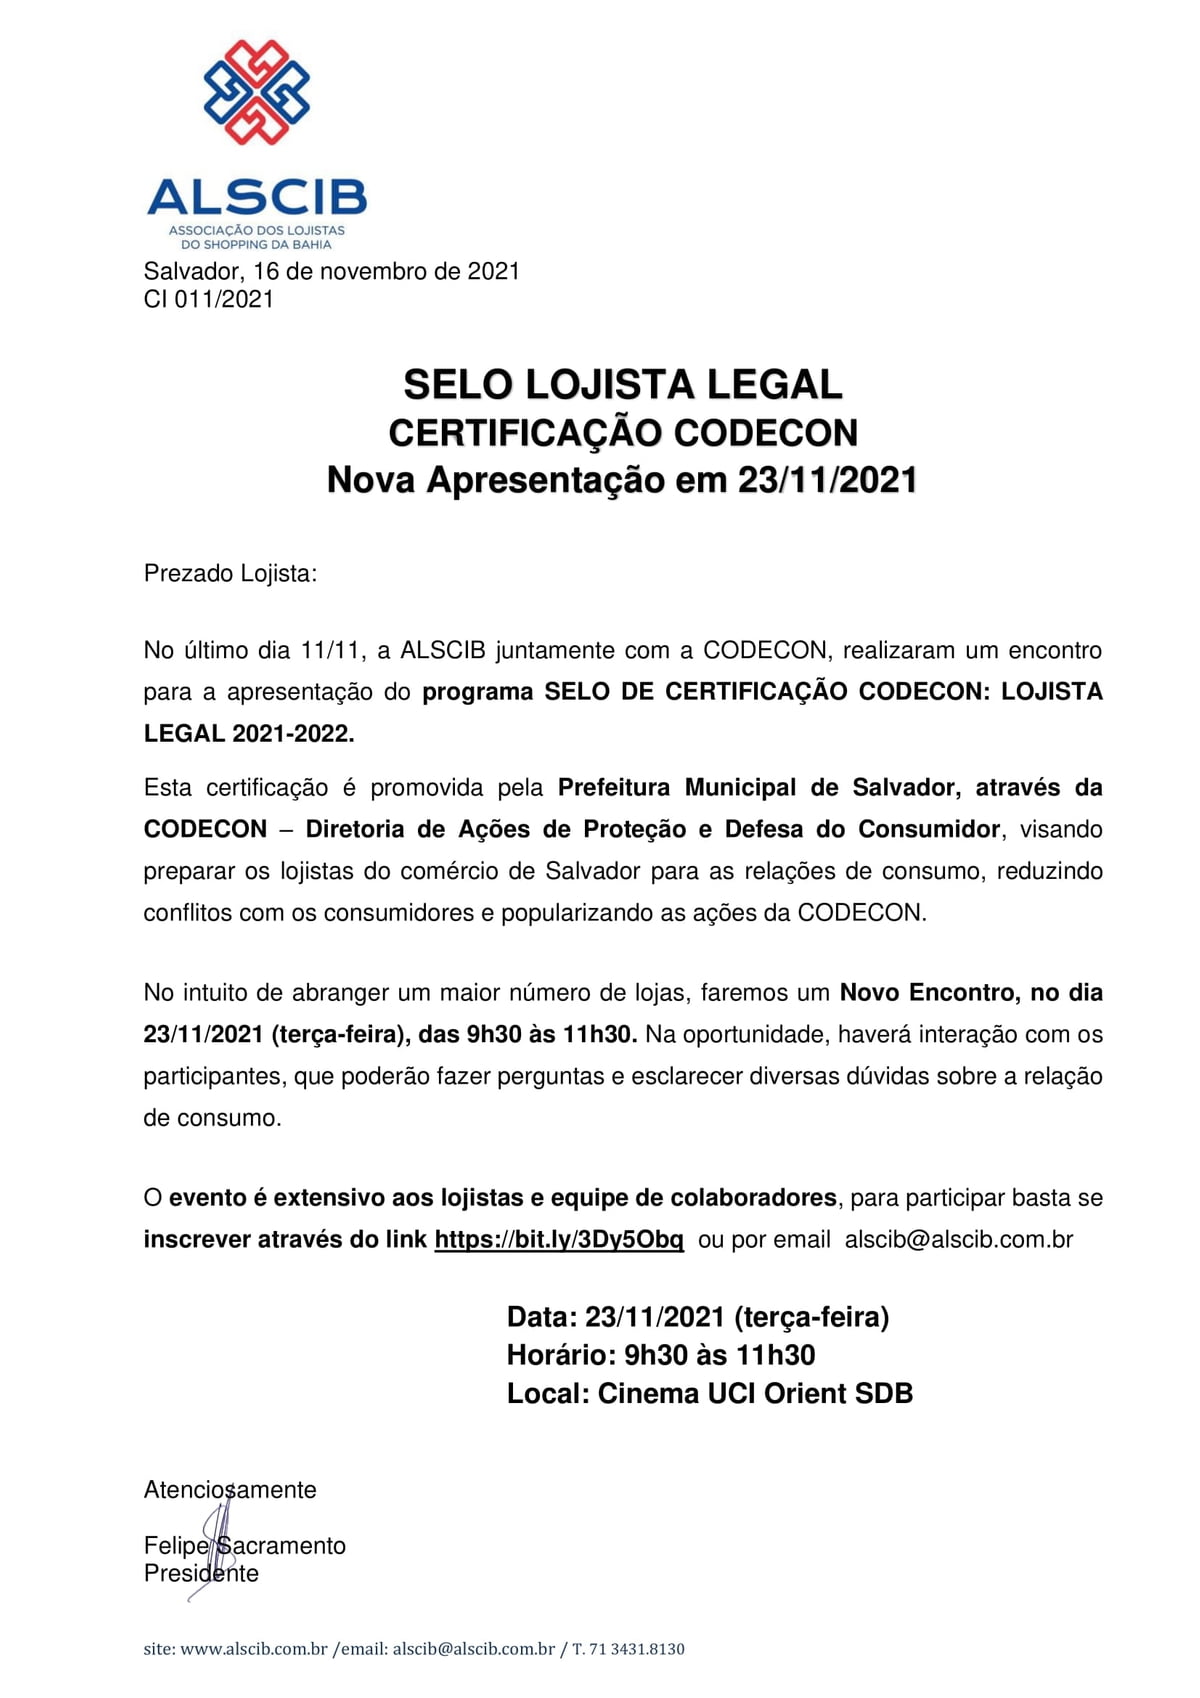 Selo Lojista Legal - Certificação CODECON 23/11/2021 - terça-feira